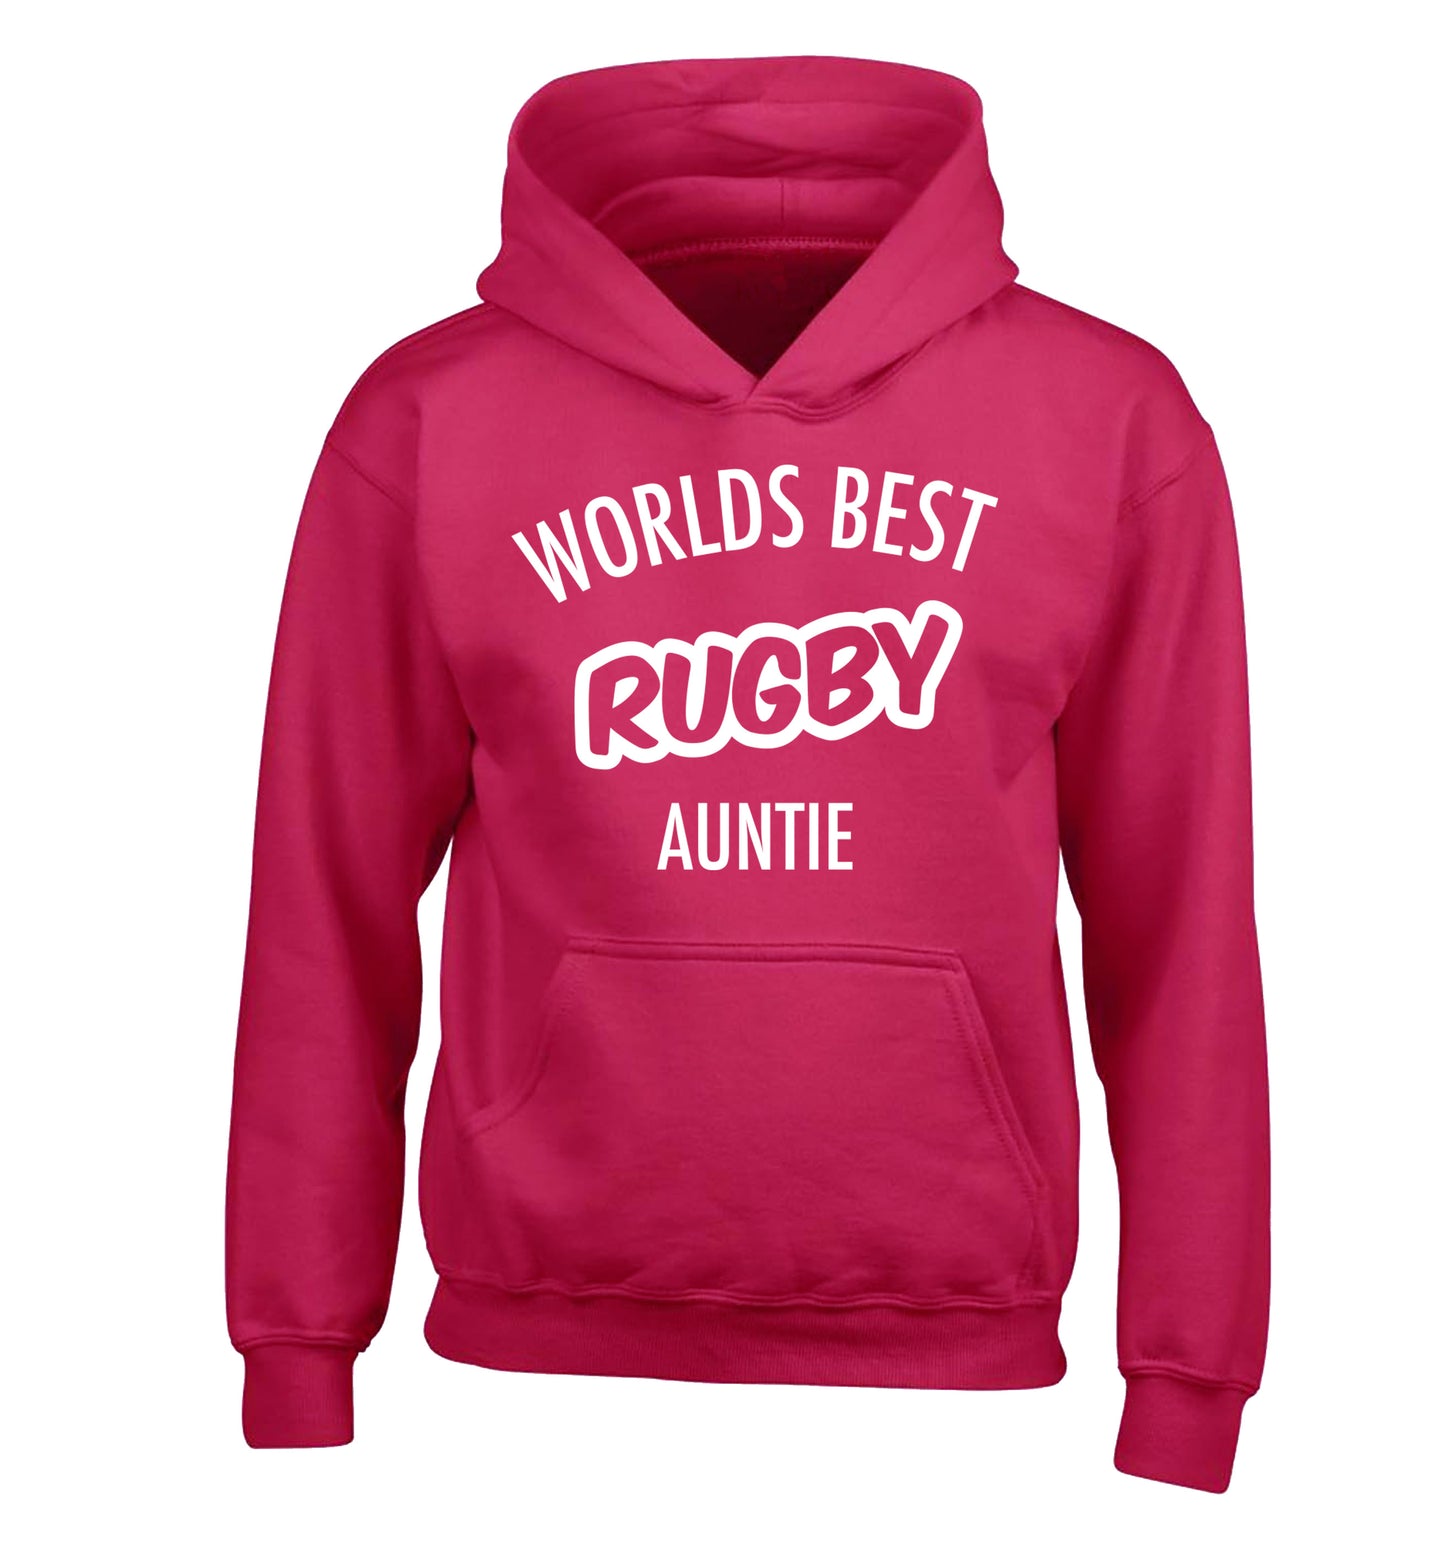 Worlds best rugby auntie children's pink hoodie 12-13 Years